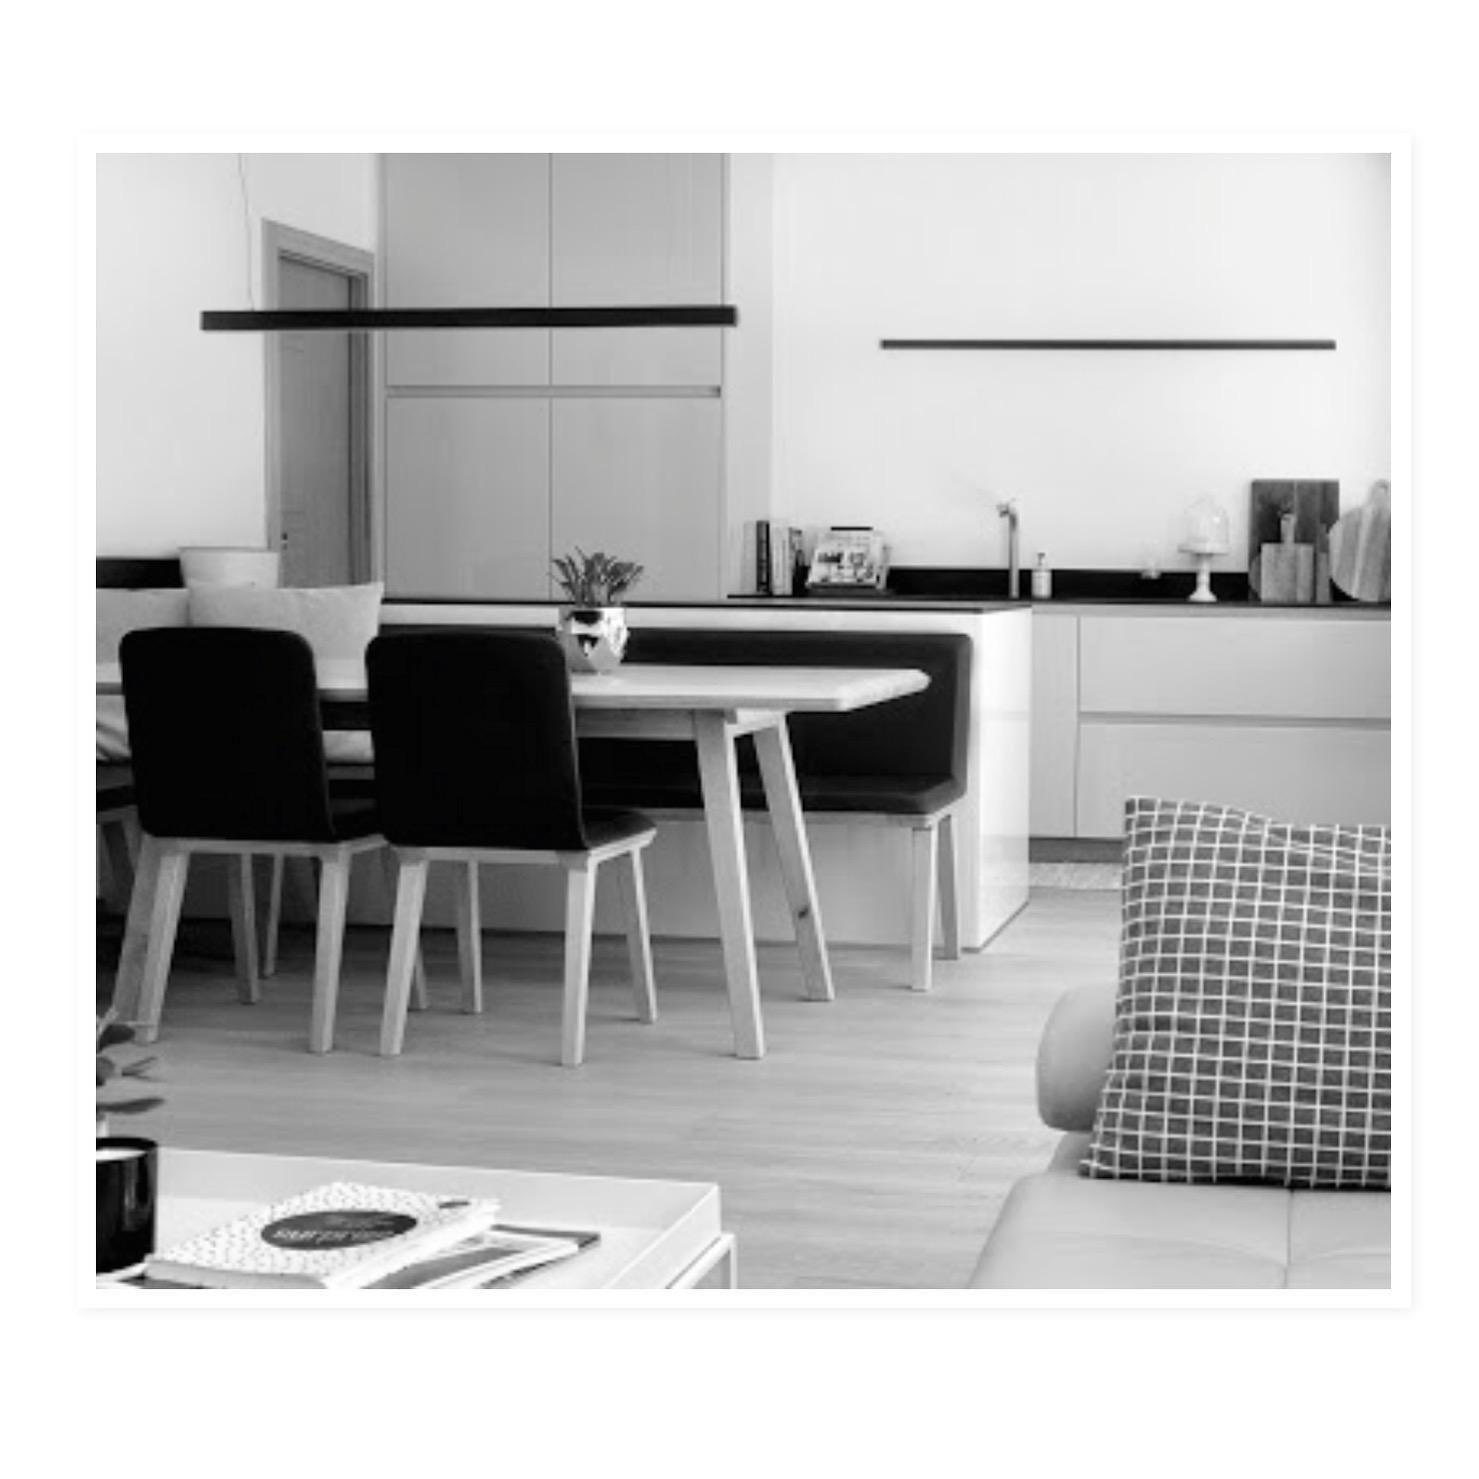 ein einblick in unsere küche. #kitchen #kitchenlove #interior #essplatz #eckbank #bench